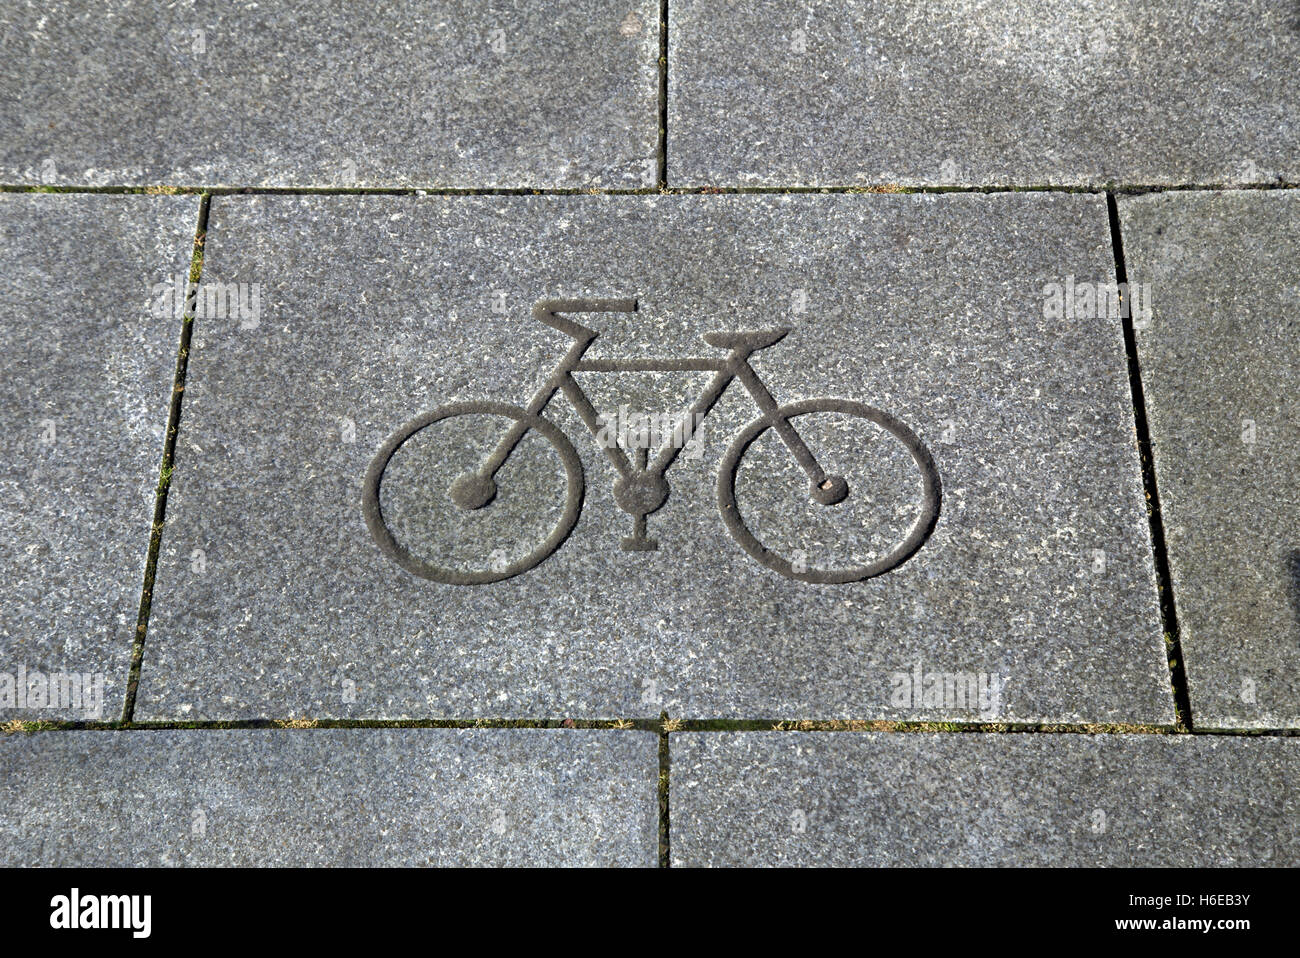 Símbolo de moto o bicicleta cortadas en una piedra de pavimentación Foto de stock